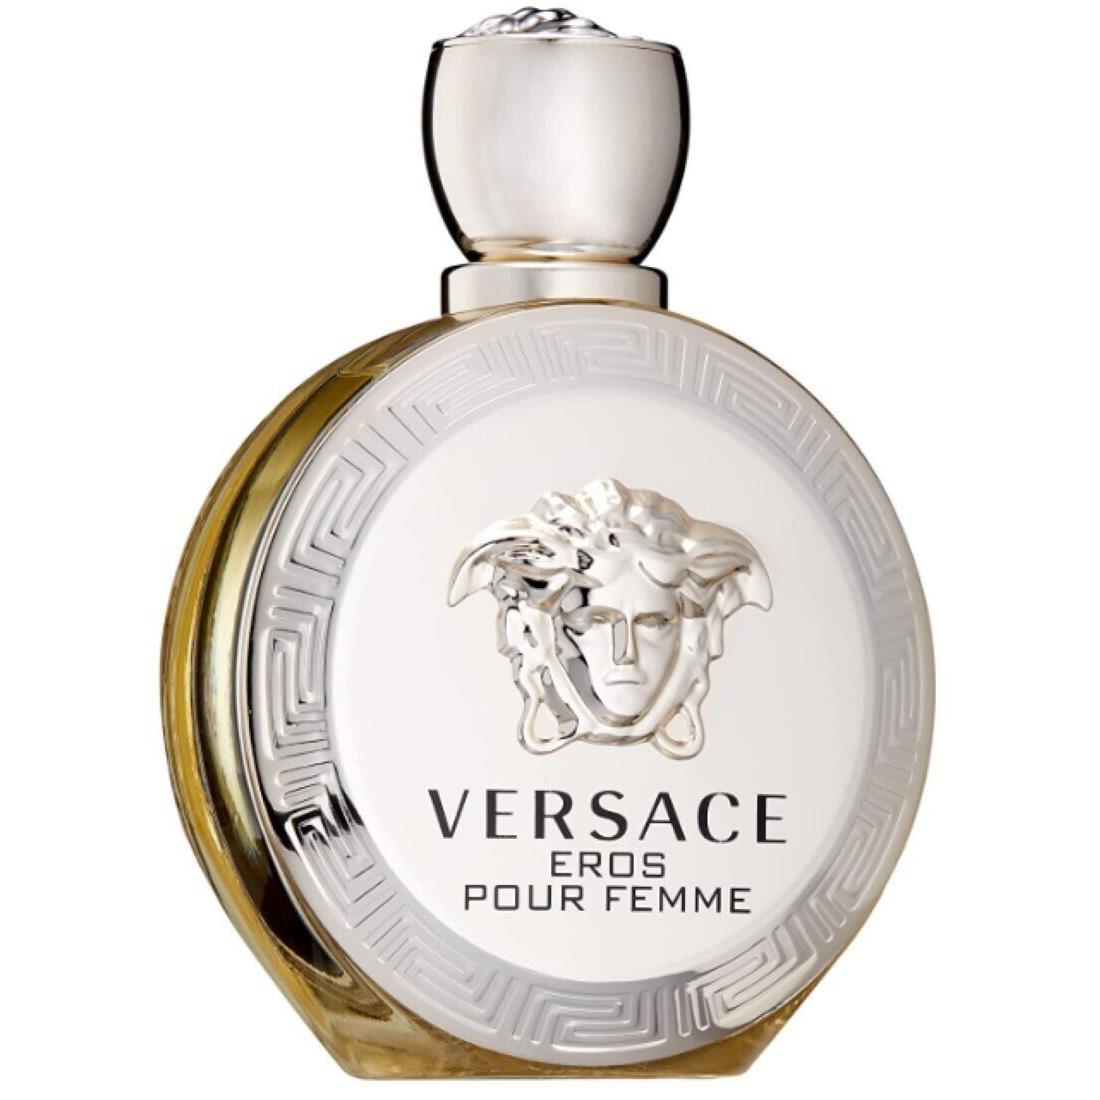 Versace Eros Eau De Parfum Spray For Women 3.4 Fl Oz Pack of 1